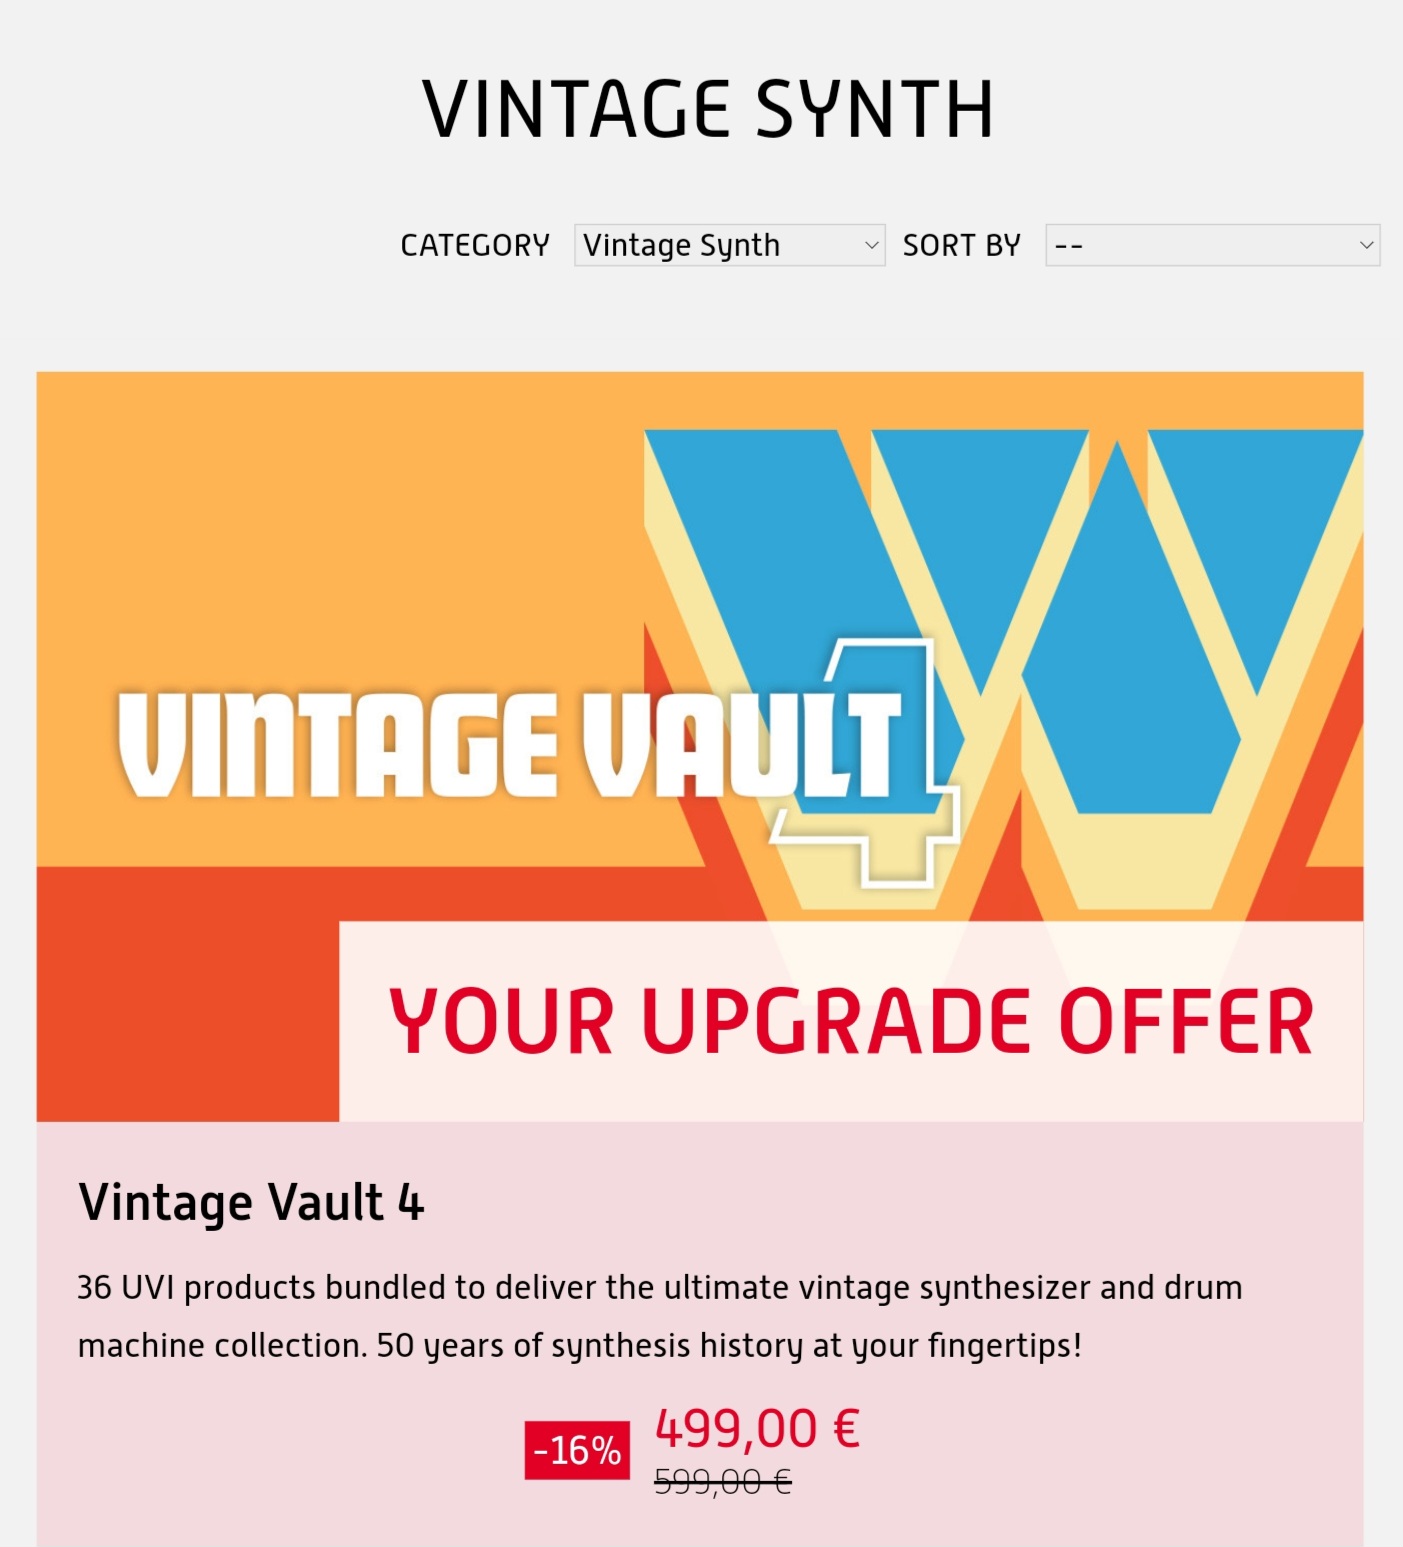 UVI vintage vault 4